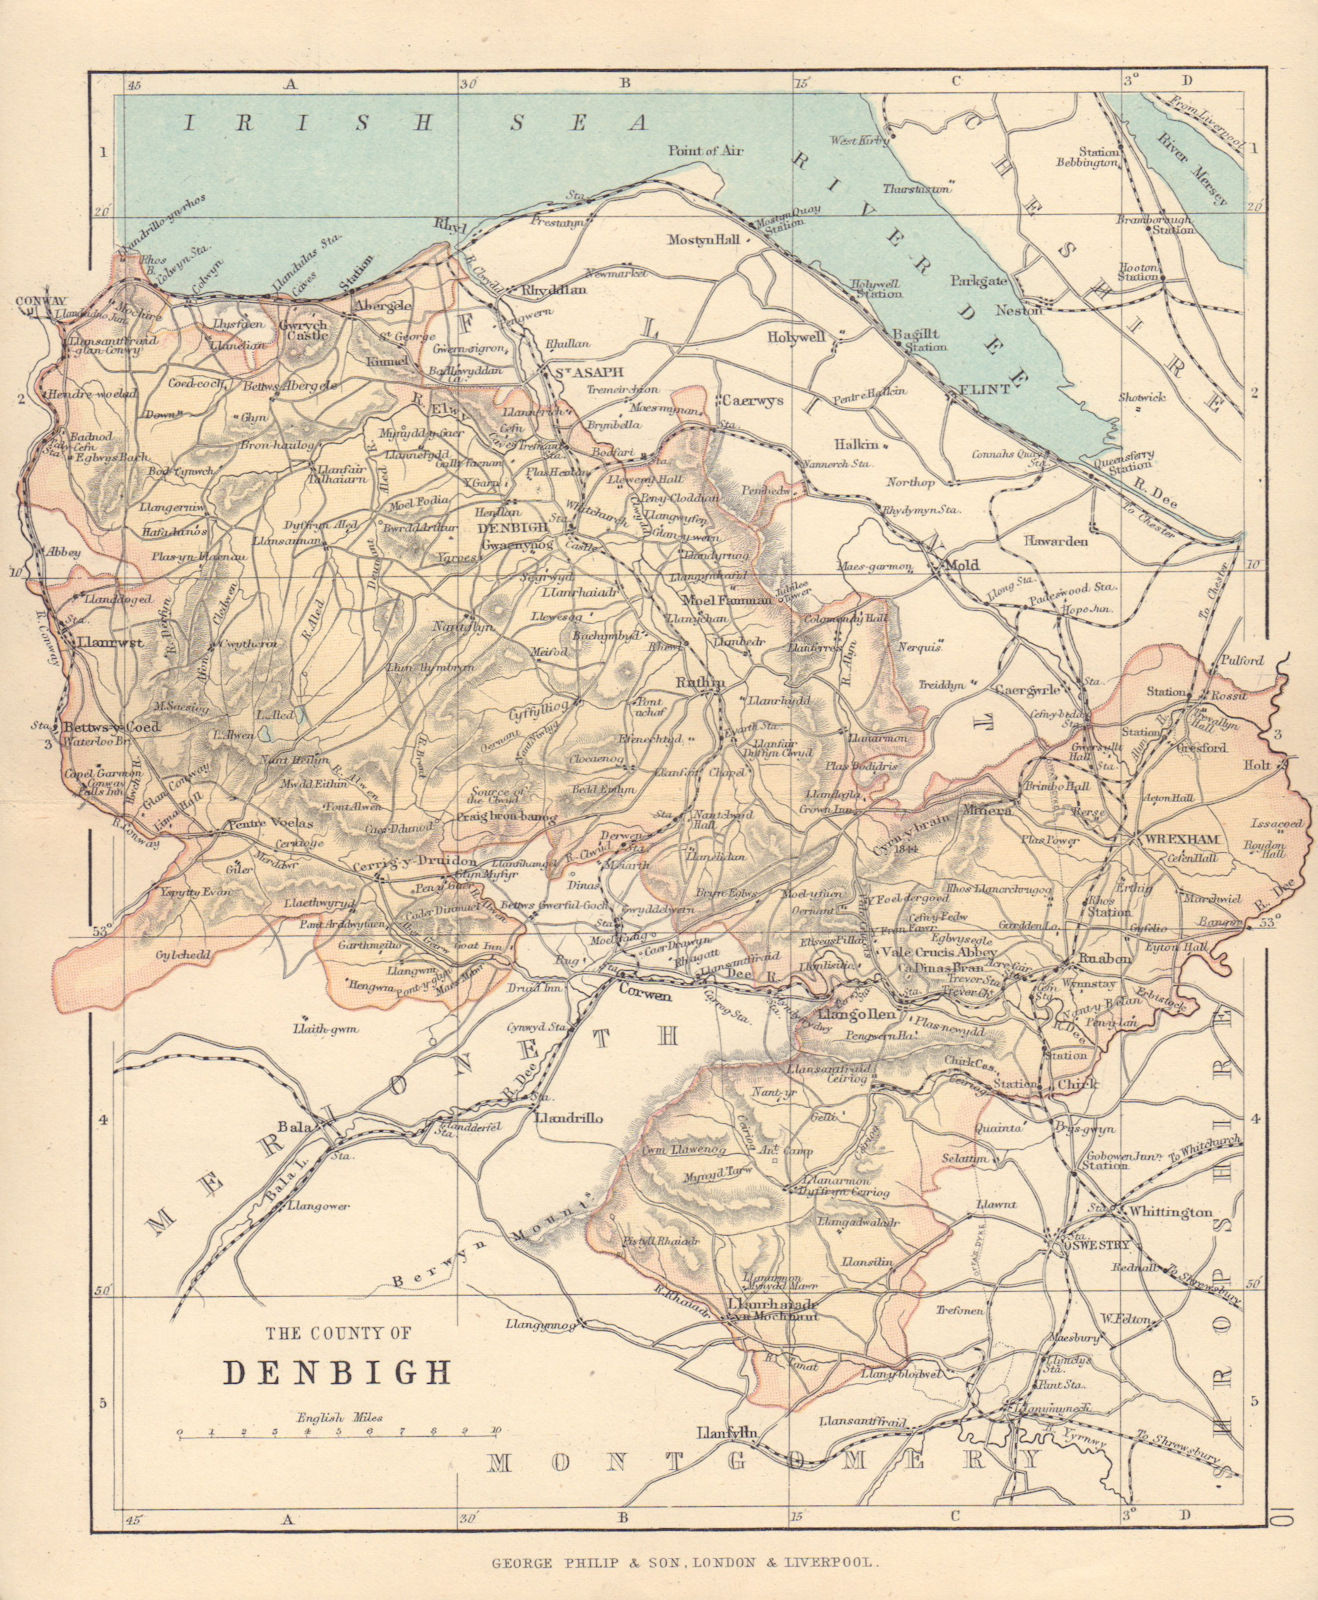 DENBIGHSHIRE "The County of Denbigh" Wrexham Rhyl Wales BARTHOLOMEW 1890 map